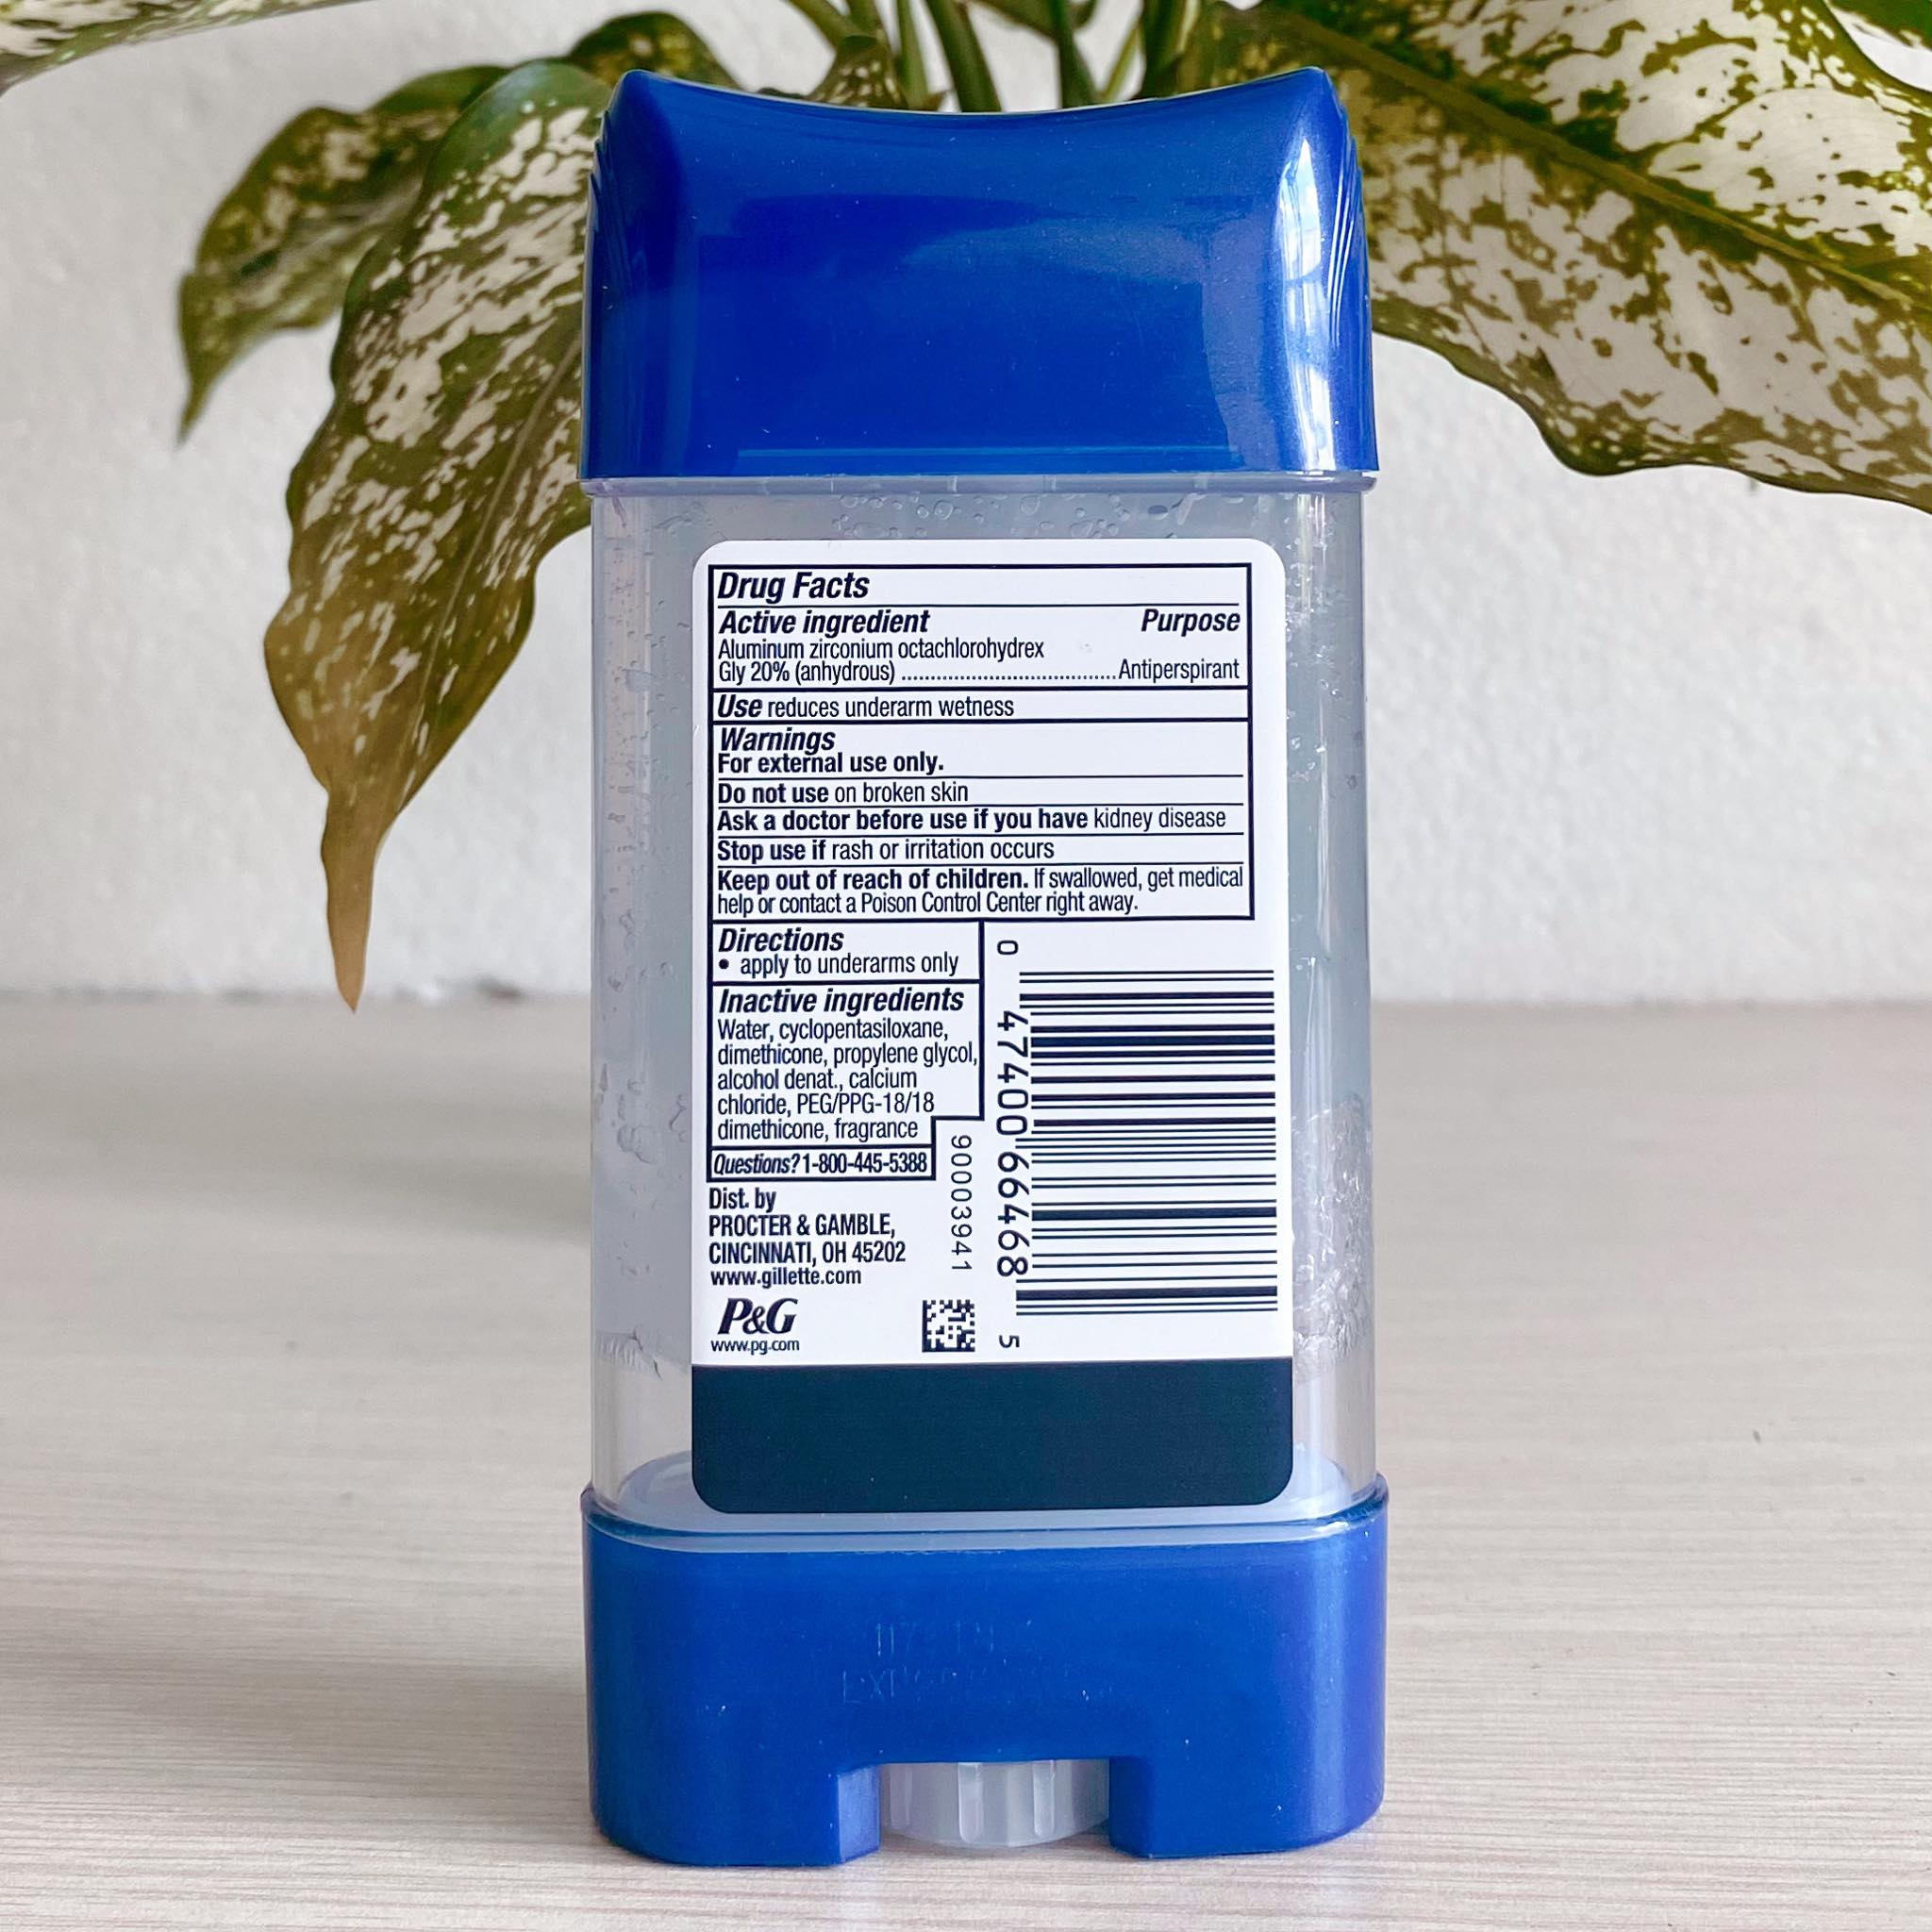 Lăn khử mùi Gillette Advanced Clear Gel Antiperspirant  Cool Wave 107g